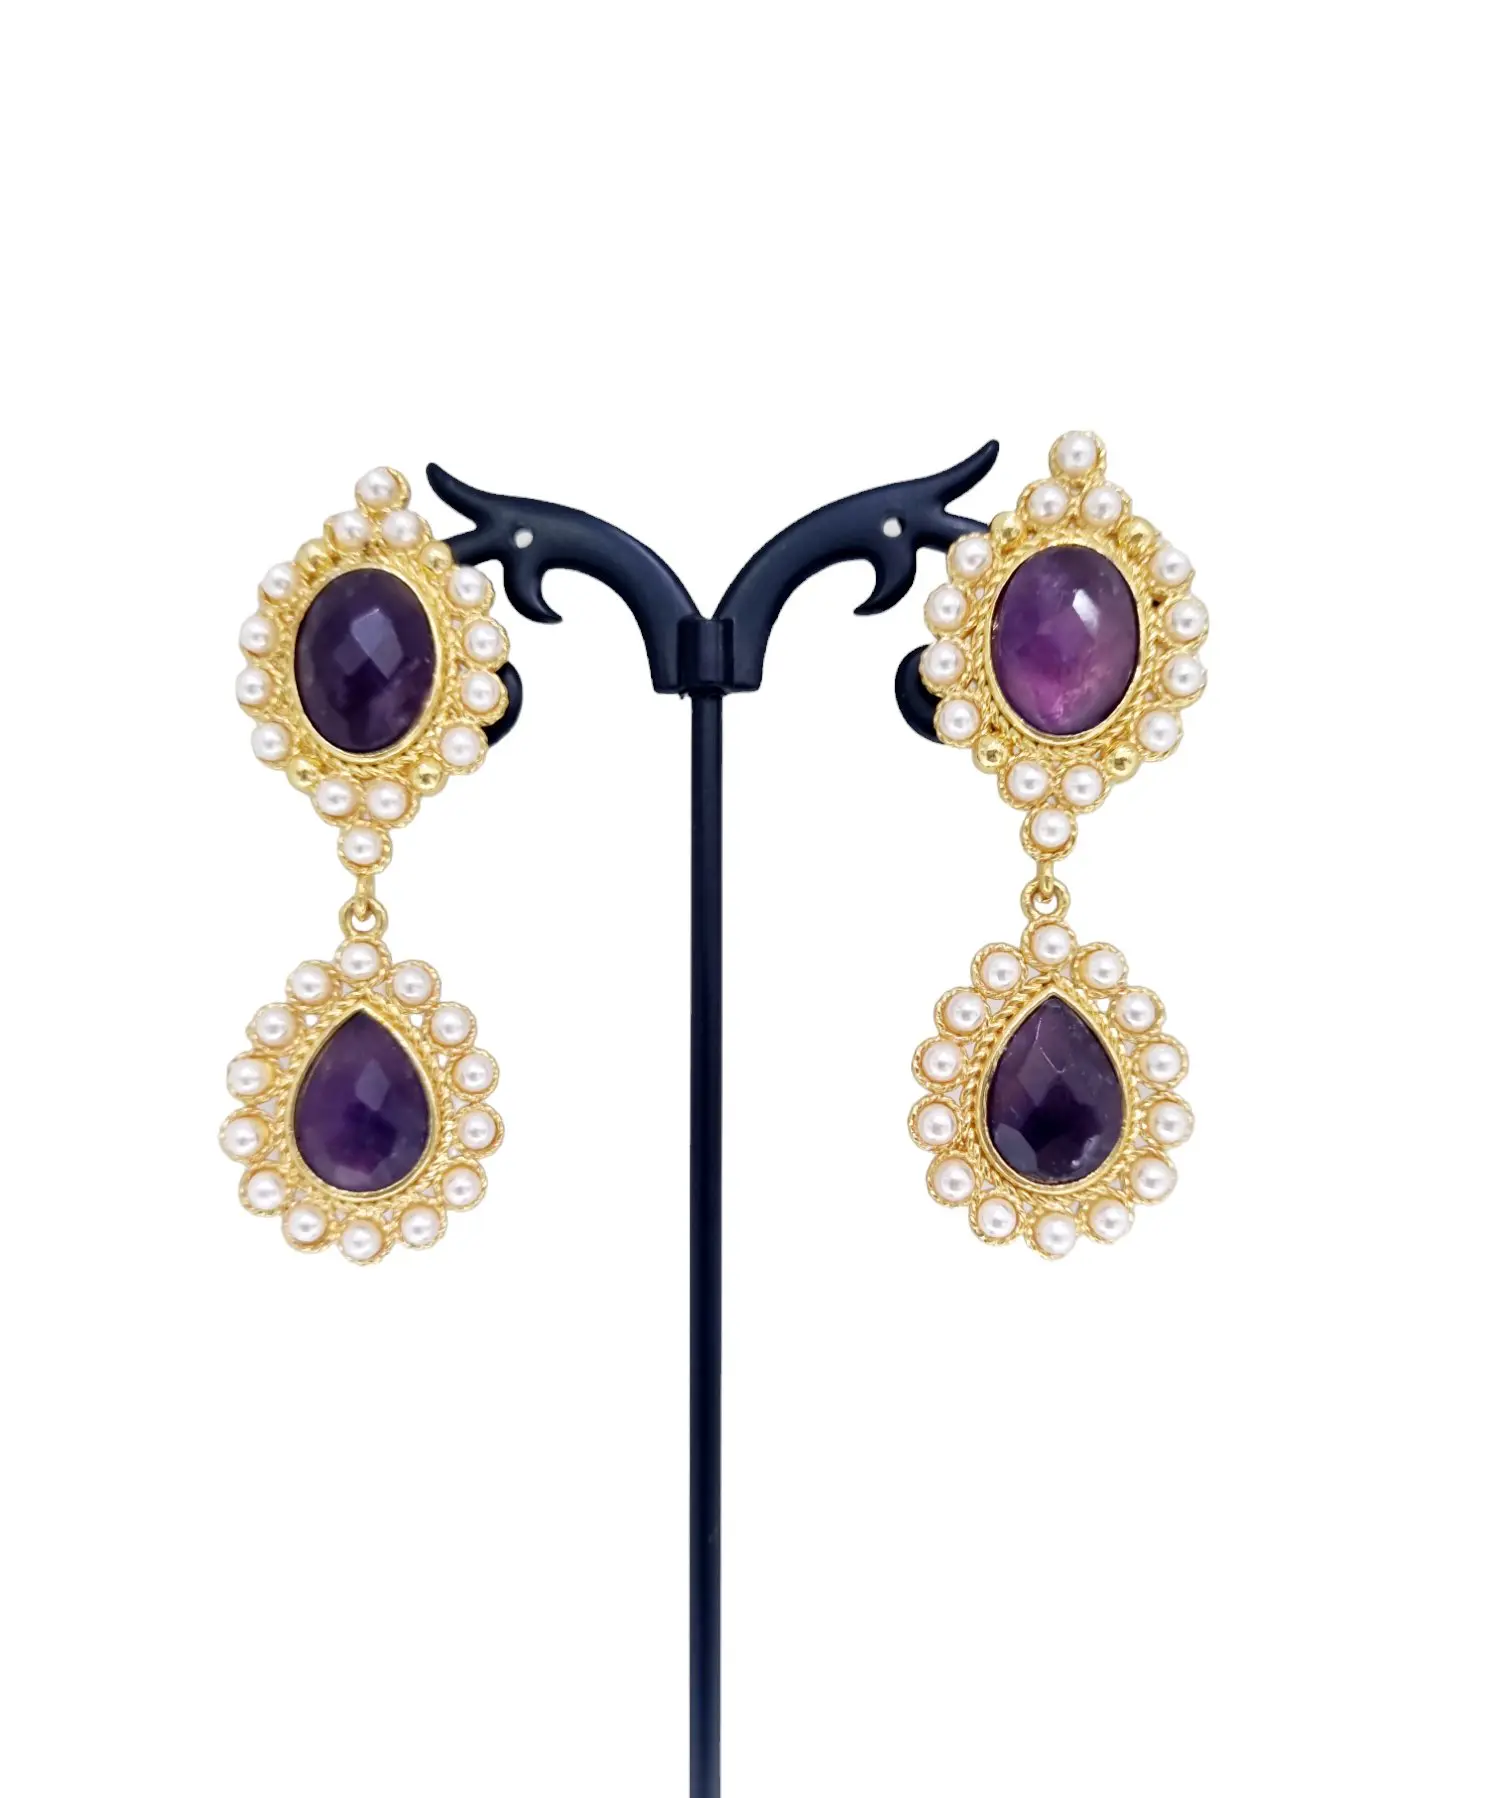 Orecchini in ametista e perle di Maiorca incastonati in ottone – Accessorio elegante e sofisticato